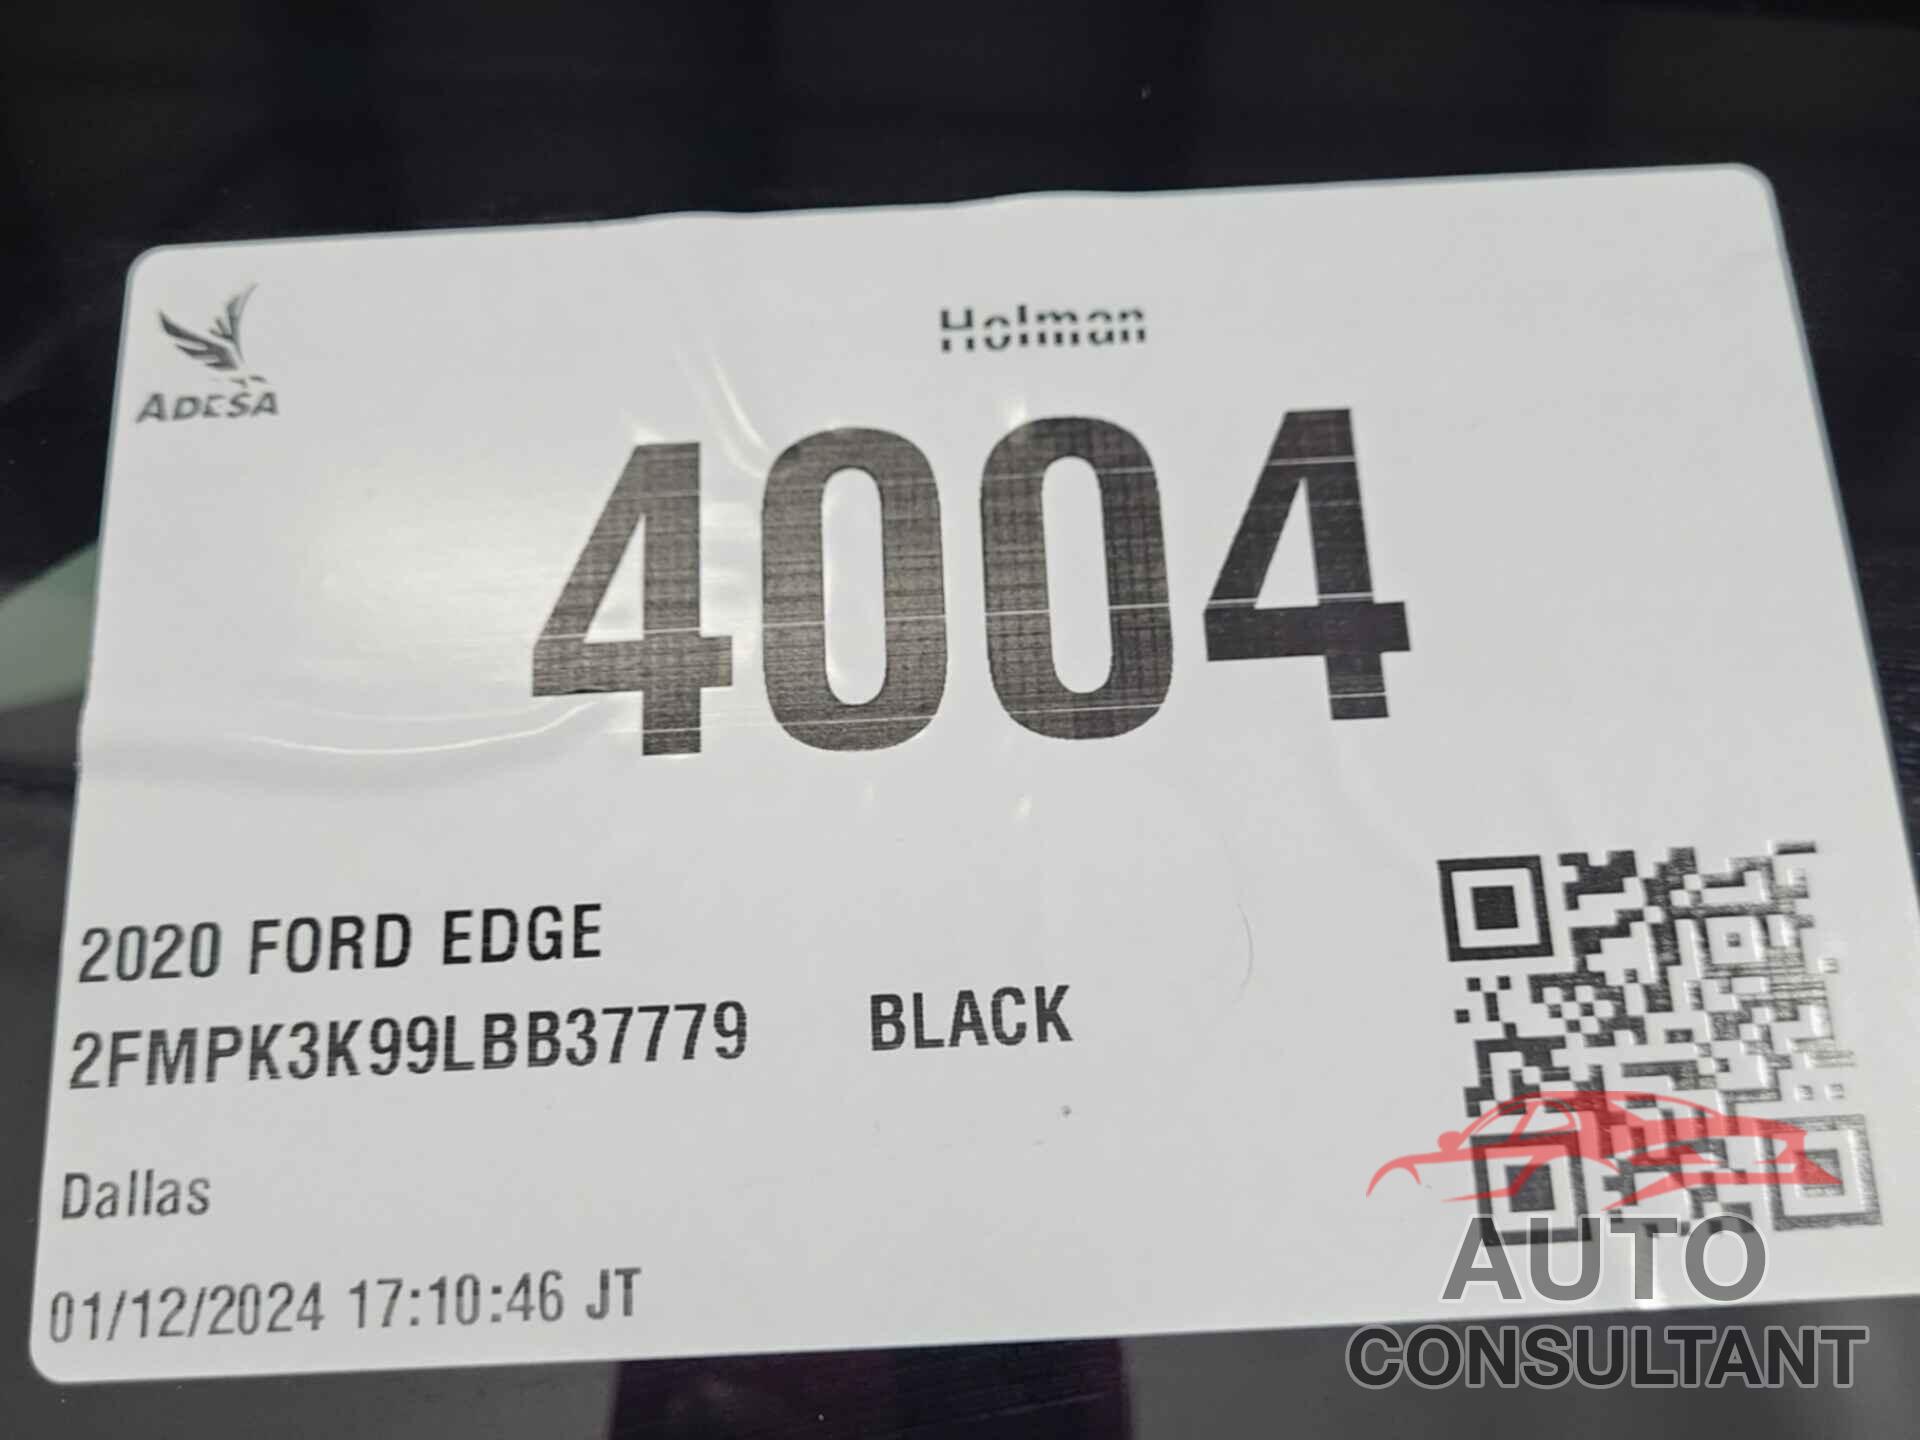 FORD EDGE 2020 - 2FMPK3K99LBB37779